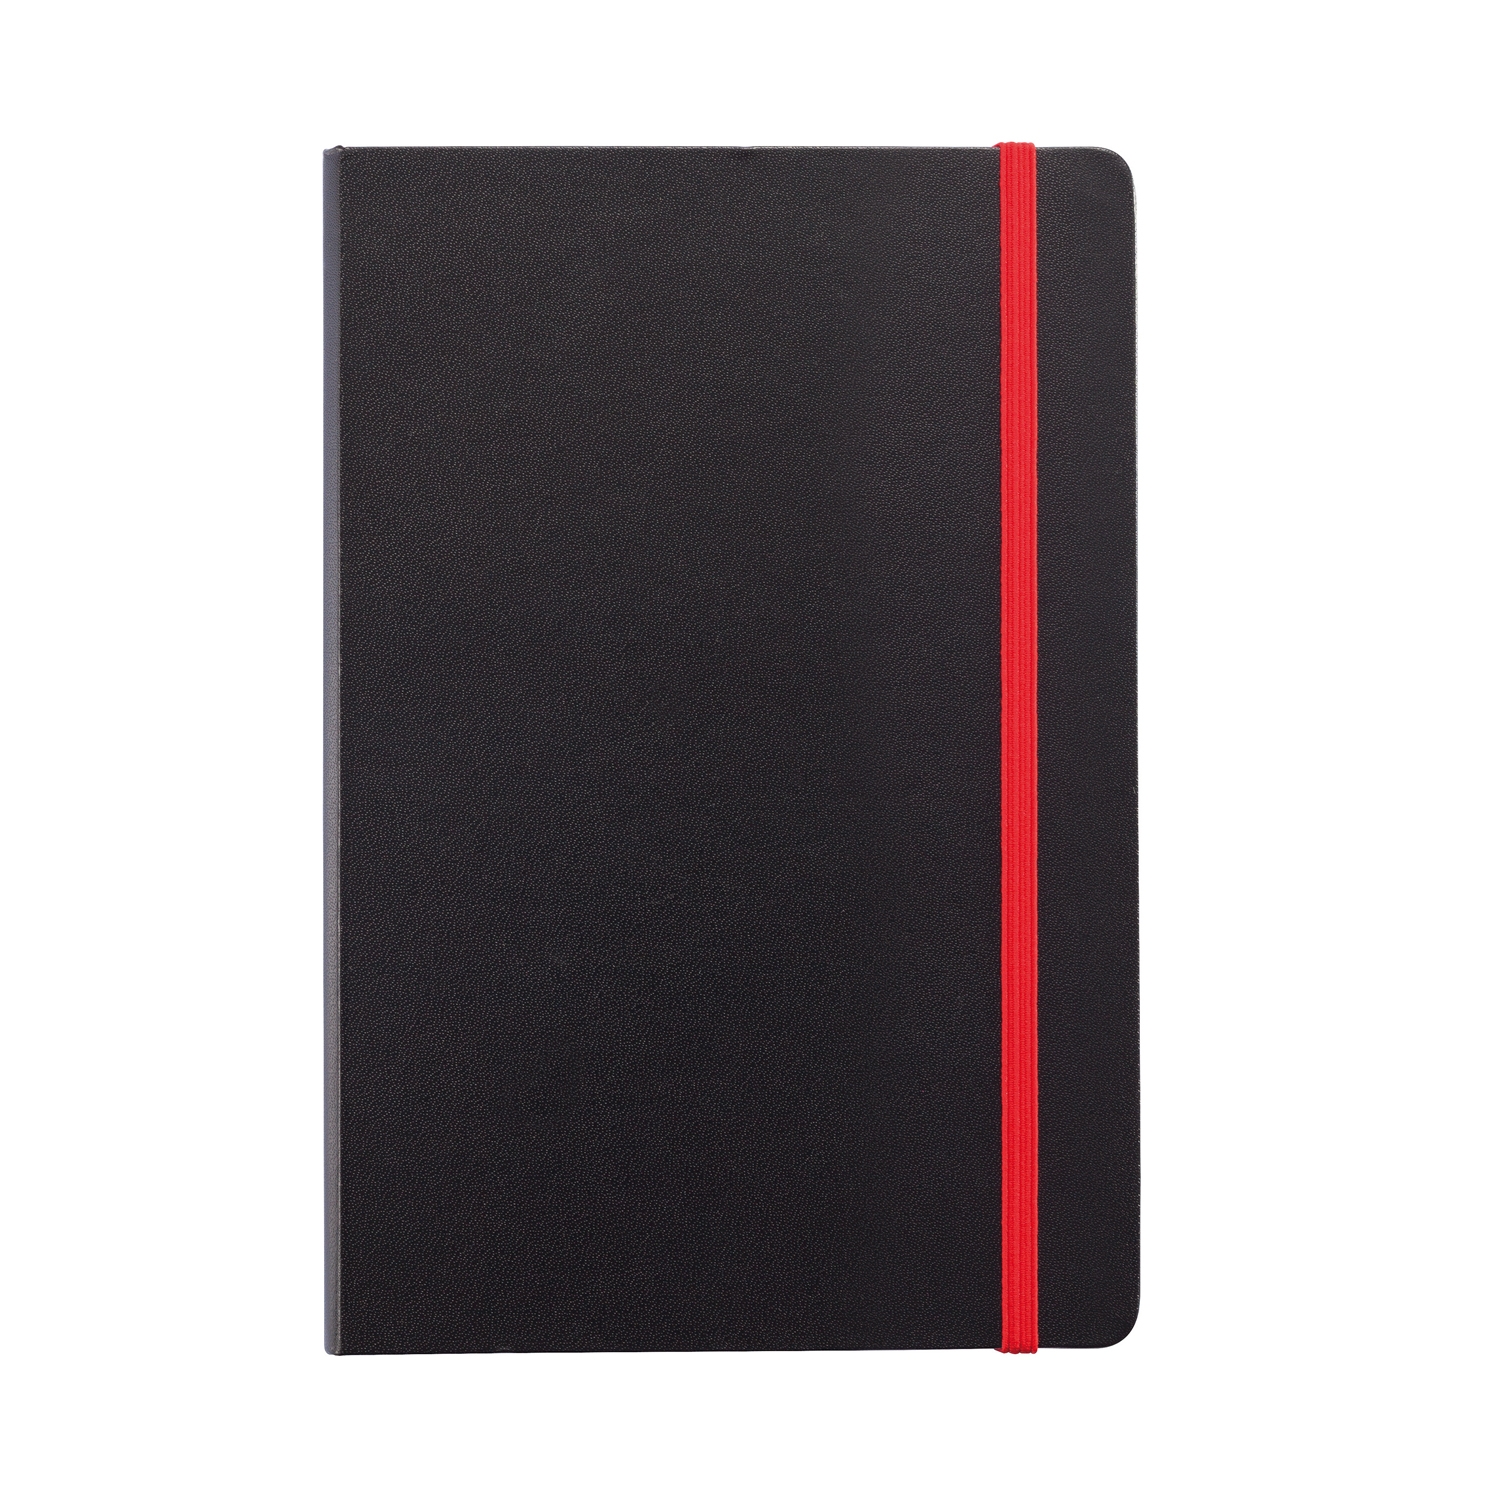 Блокнот на резинке с цветным срезом, А5, черный; красный, бумага